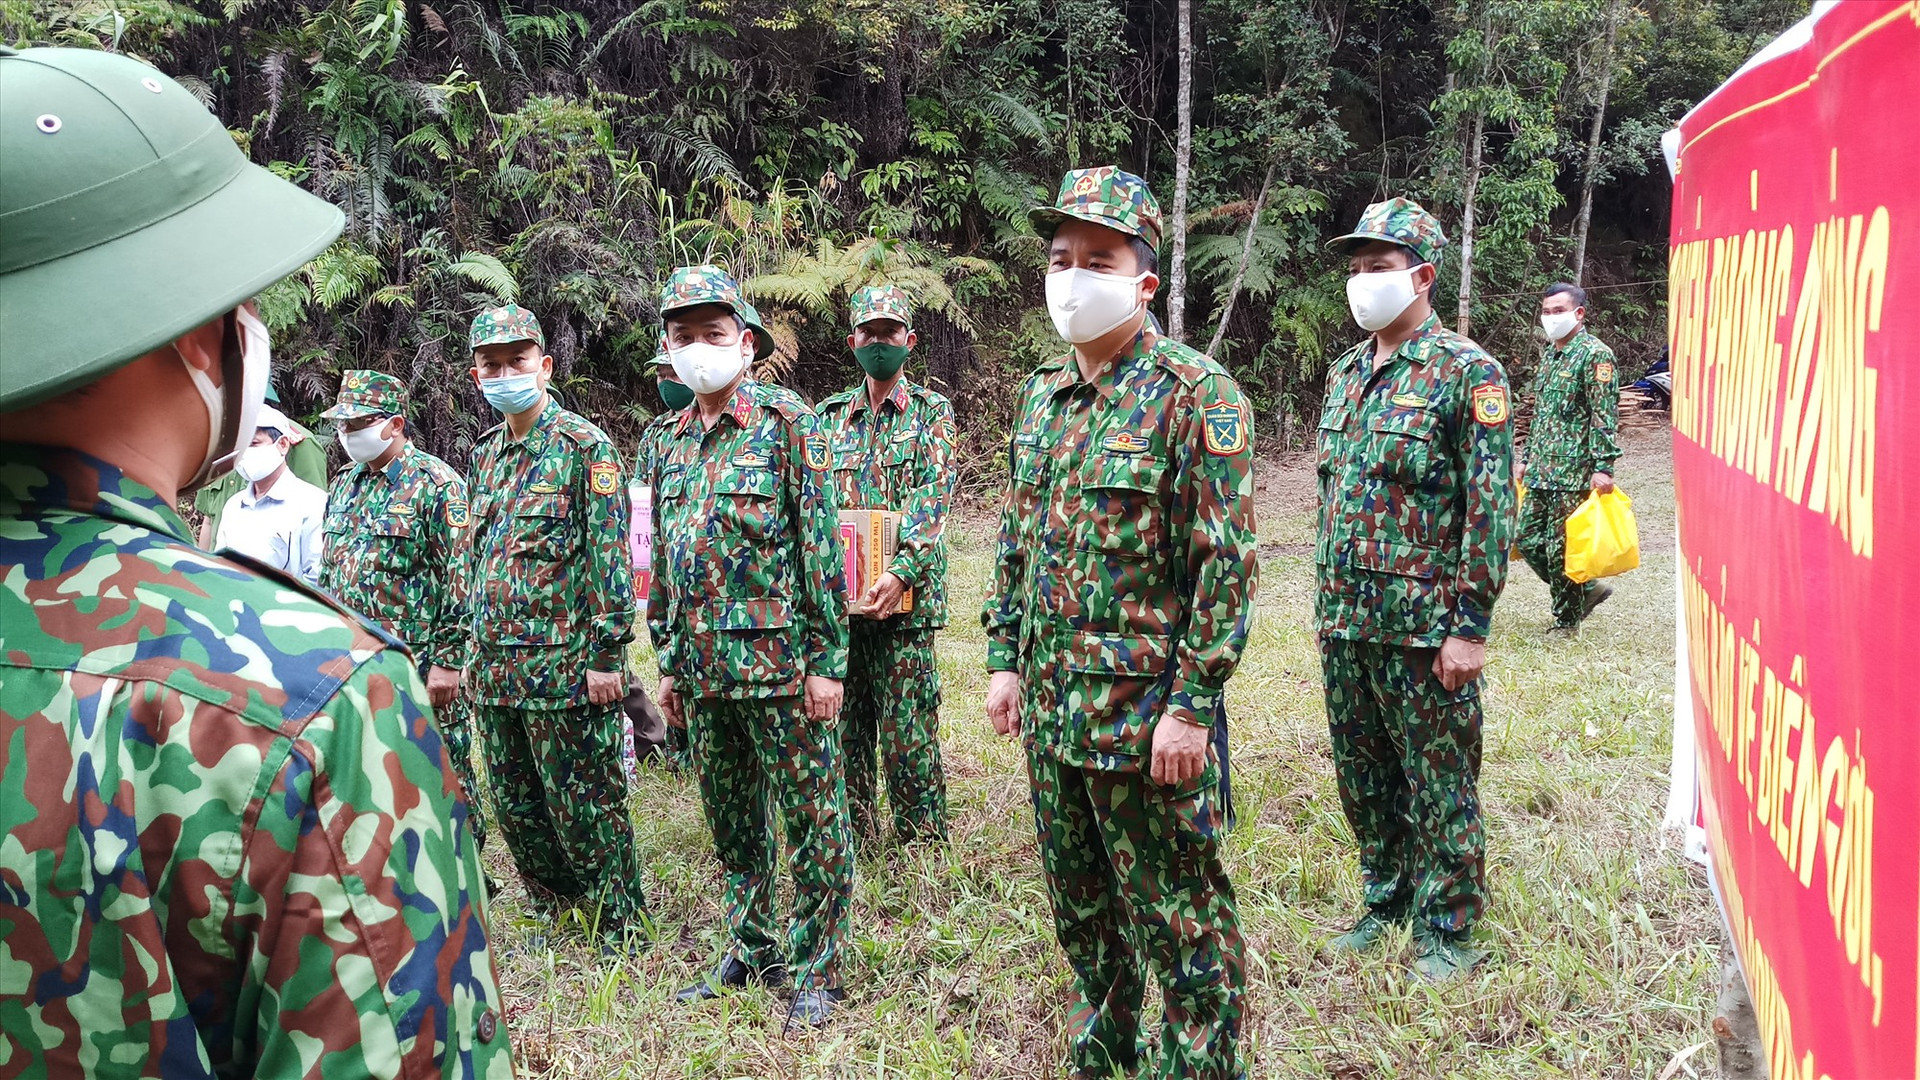 Phó Chủ tịch UBND tỉnh Trần Văn Tân chia sẻ, động viên các chiến sĩ tại chốt kiểm soát. Ảnh: A.N